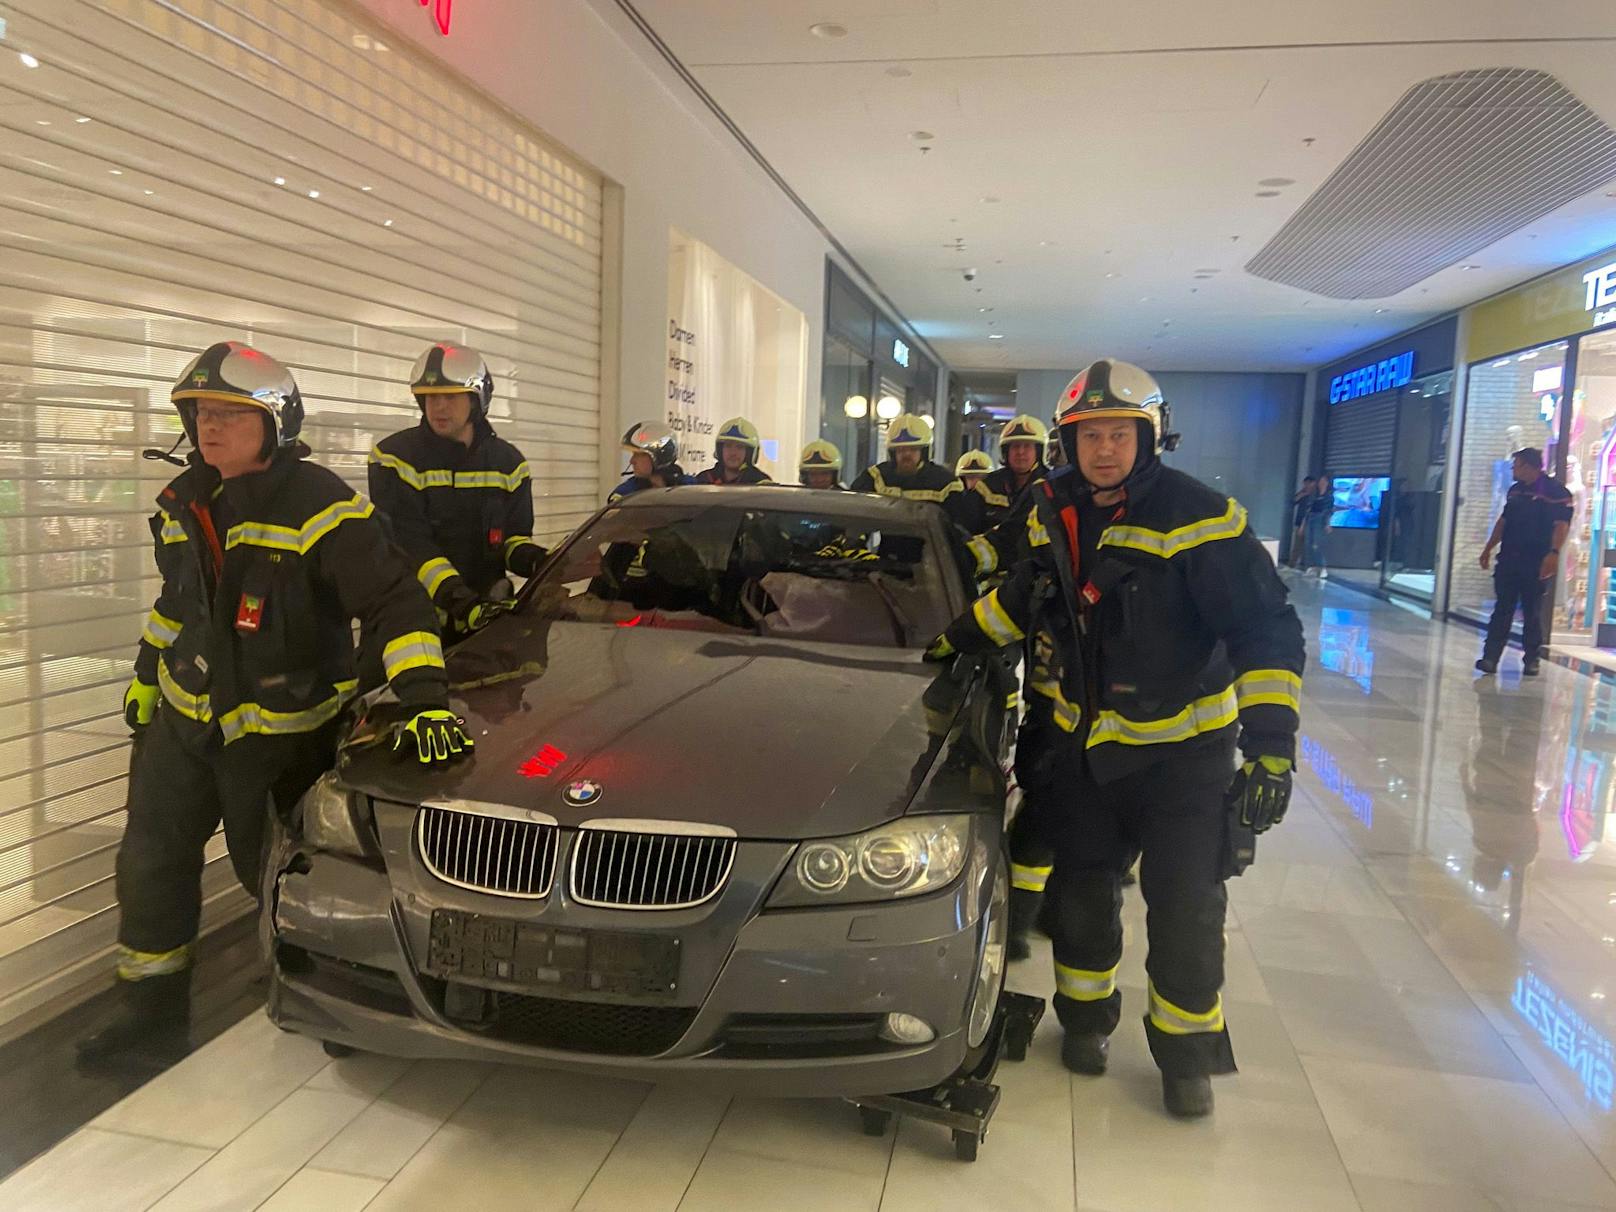 Feuerwehr transportierte BMW-Wrack aus SCS.